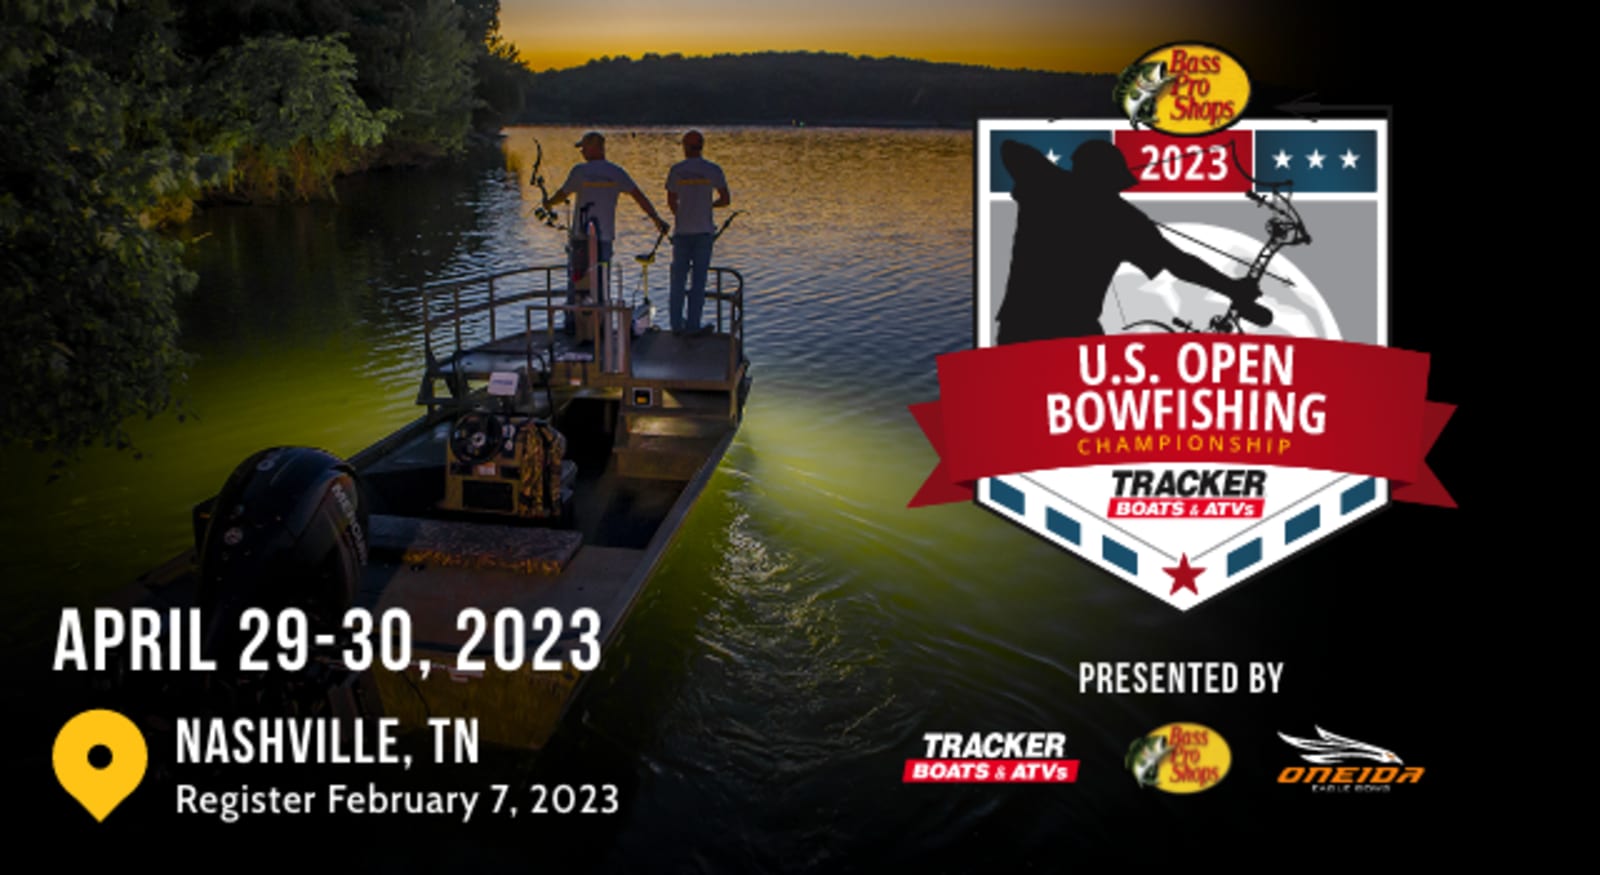 U.S. Open Bowfishing Championship Bass Pro Shops